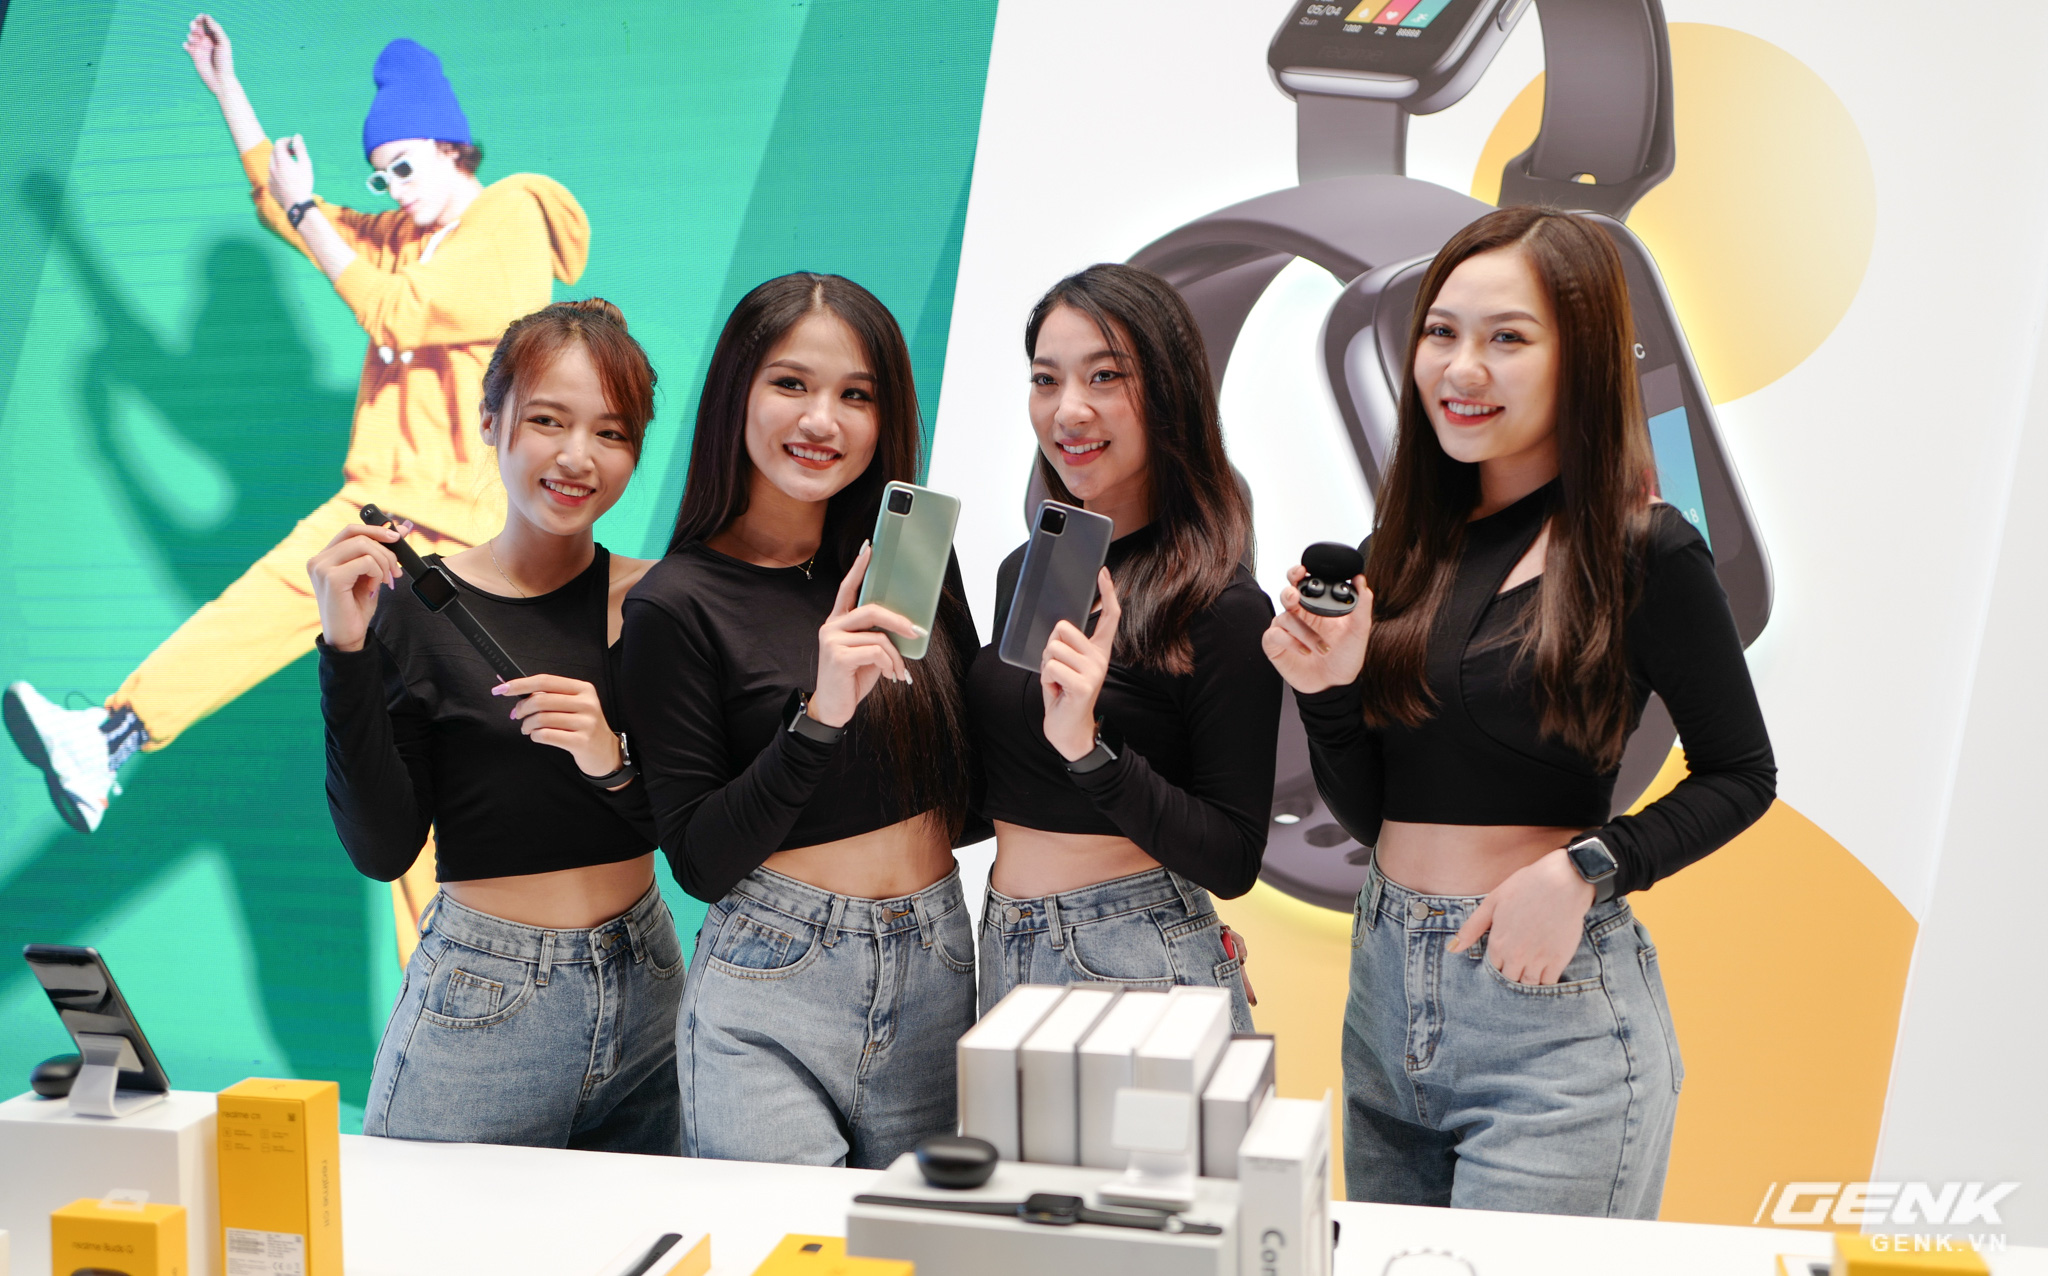 Realme mở rộng hệ sinh thái sản phẩm tại Việt Nam, ra mắt cùng lúc điện thoại, tai nghe và đồng hồ thông minh